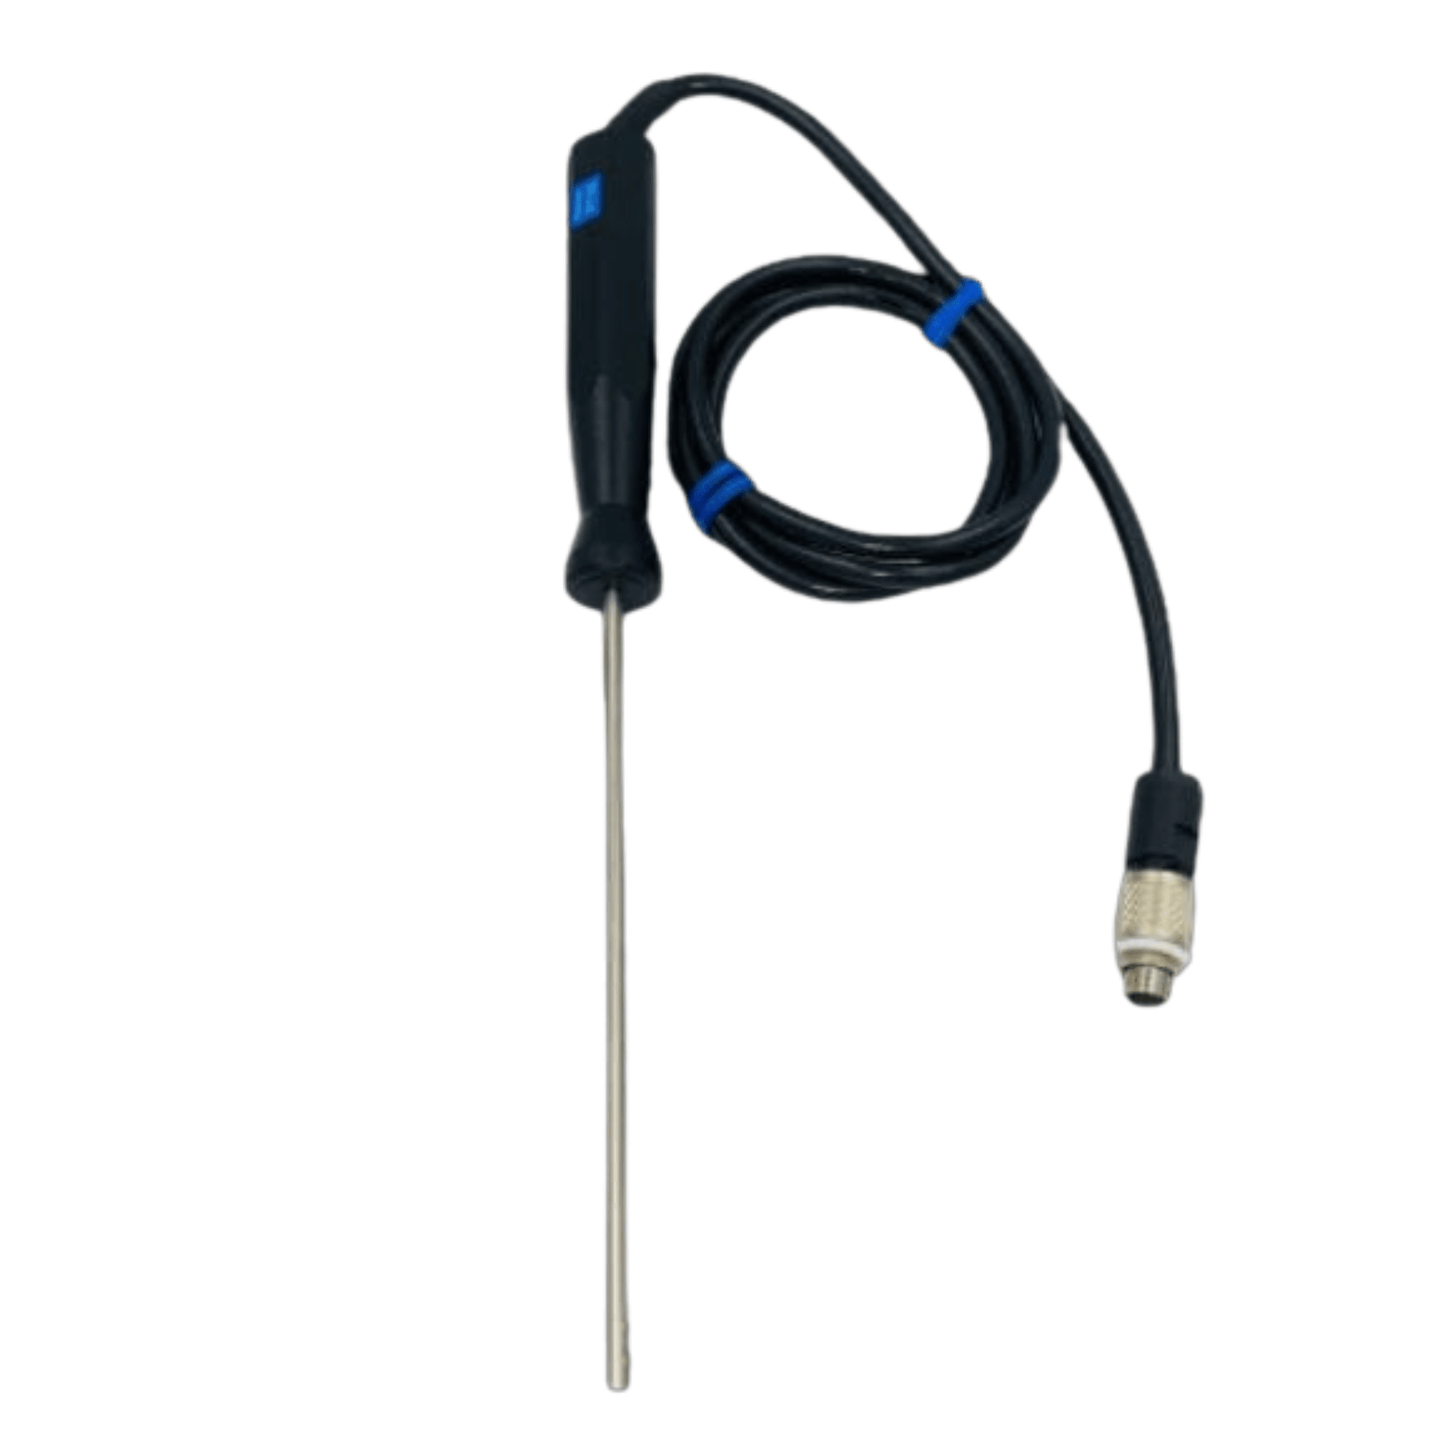 Une sonde noire à laquelle est attaché un cordon bleu pour mesurer le CVC et l'air, le Thermometer.fr Sonde d'ambiance PT100 - Sonde RTD air ou gaz.